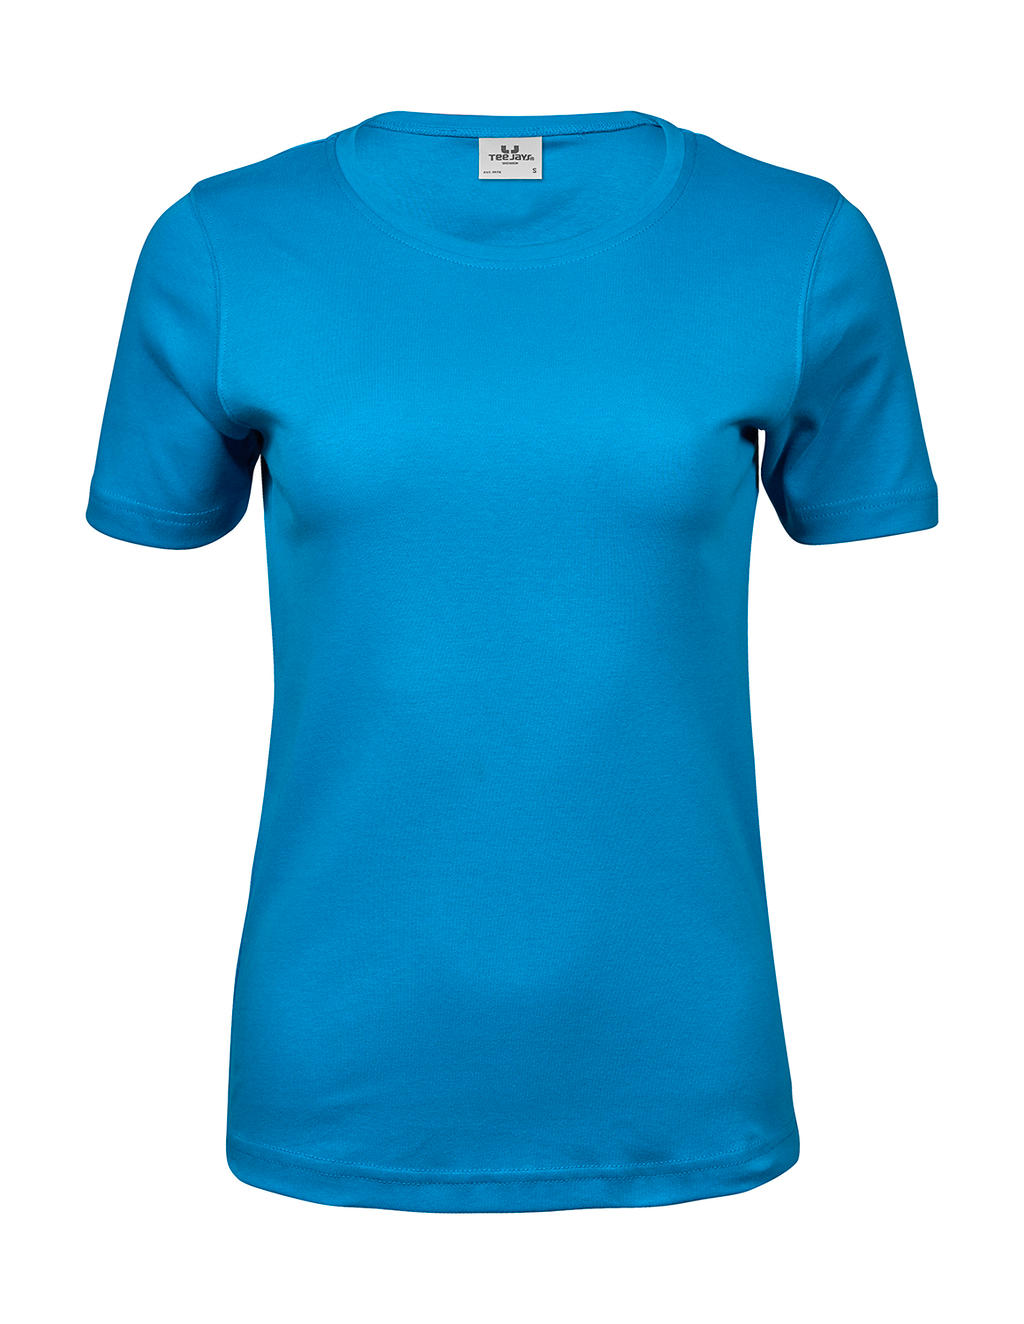 Tee jays - camiseta orgánica interlock mujer - 101. 54